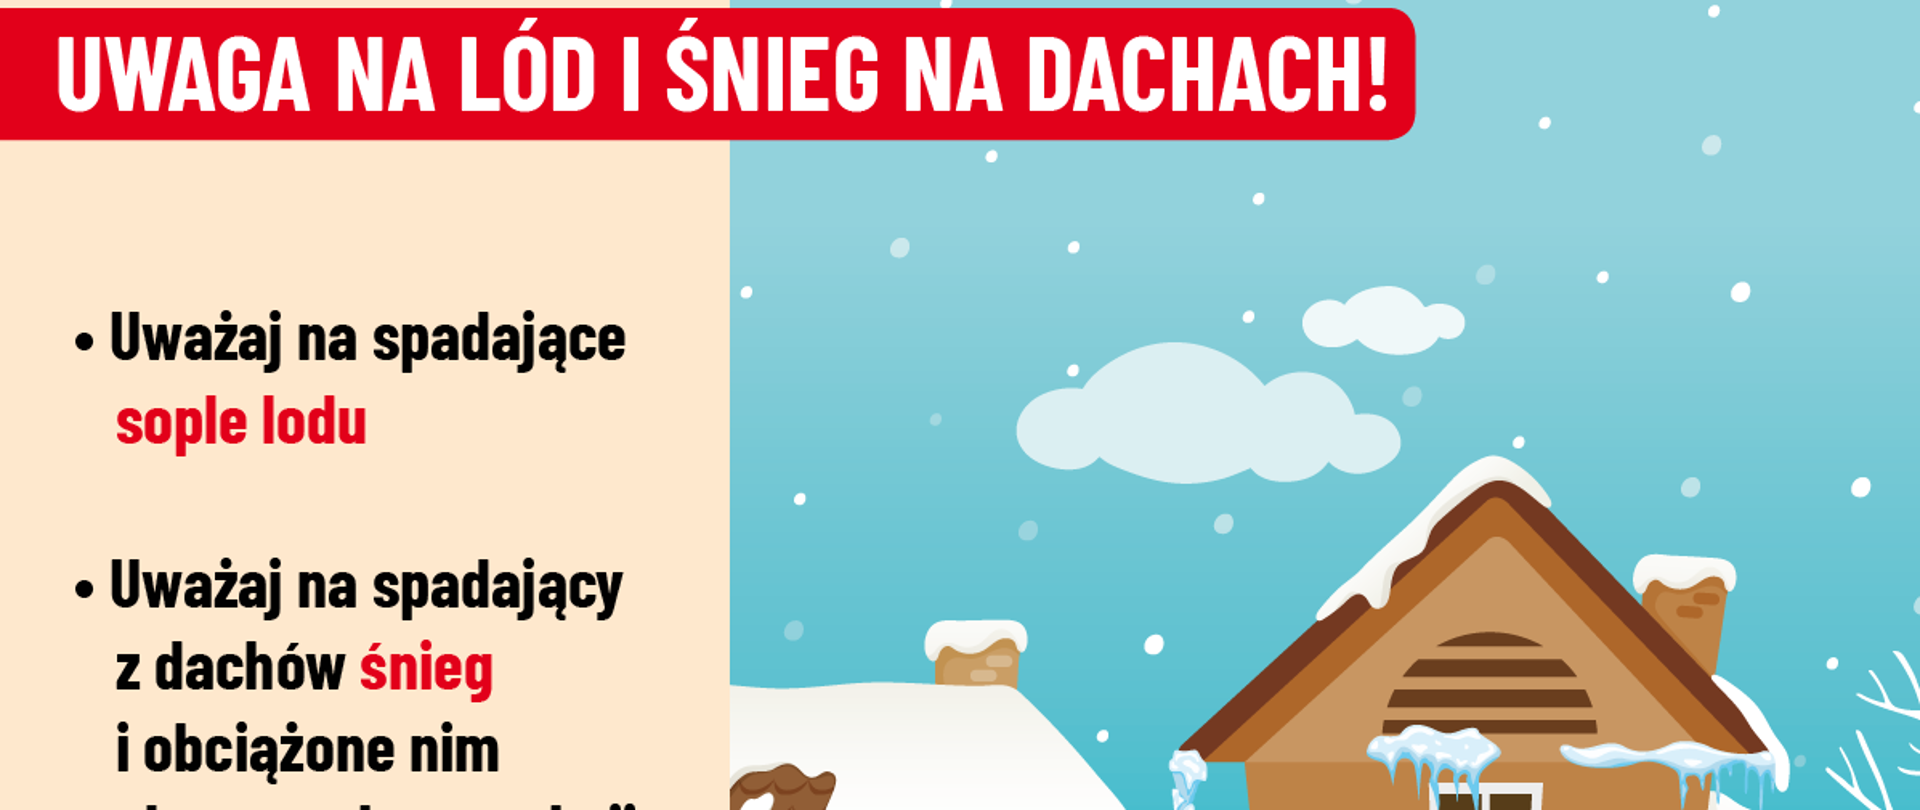 Uwaga_na_lód_i_śnieg_na_dachach